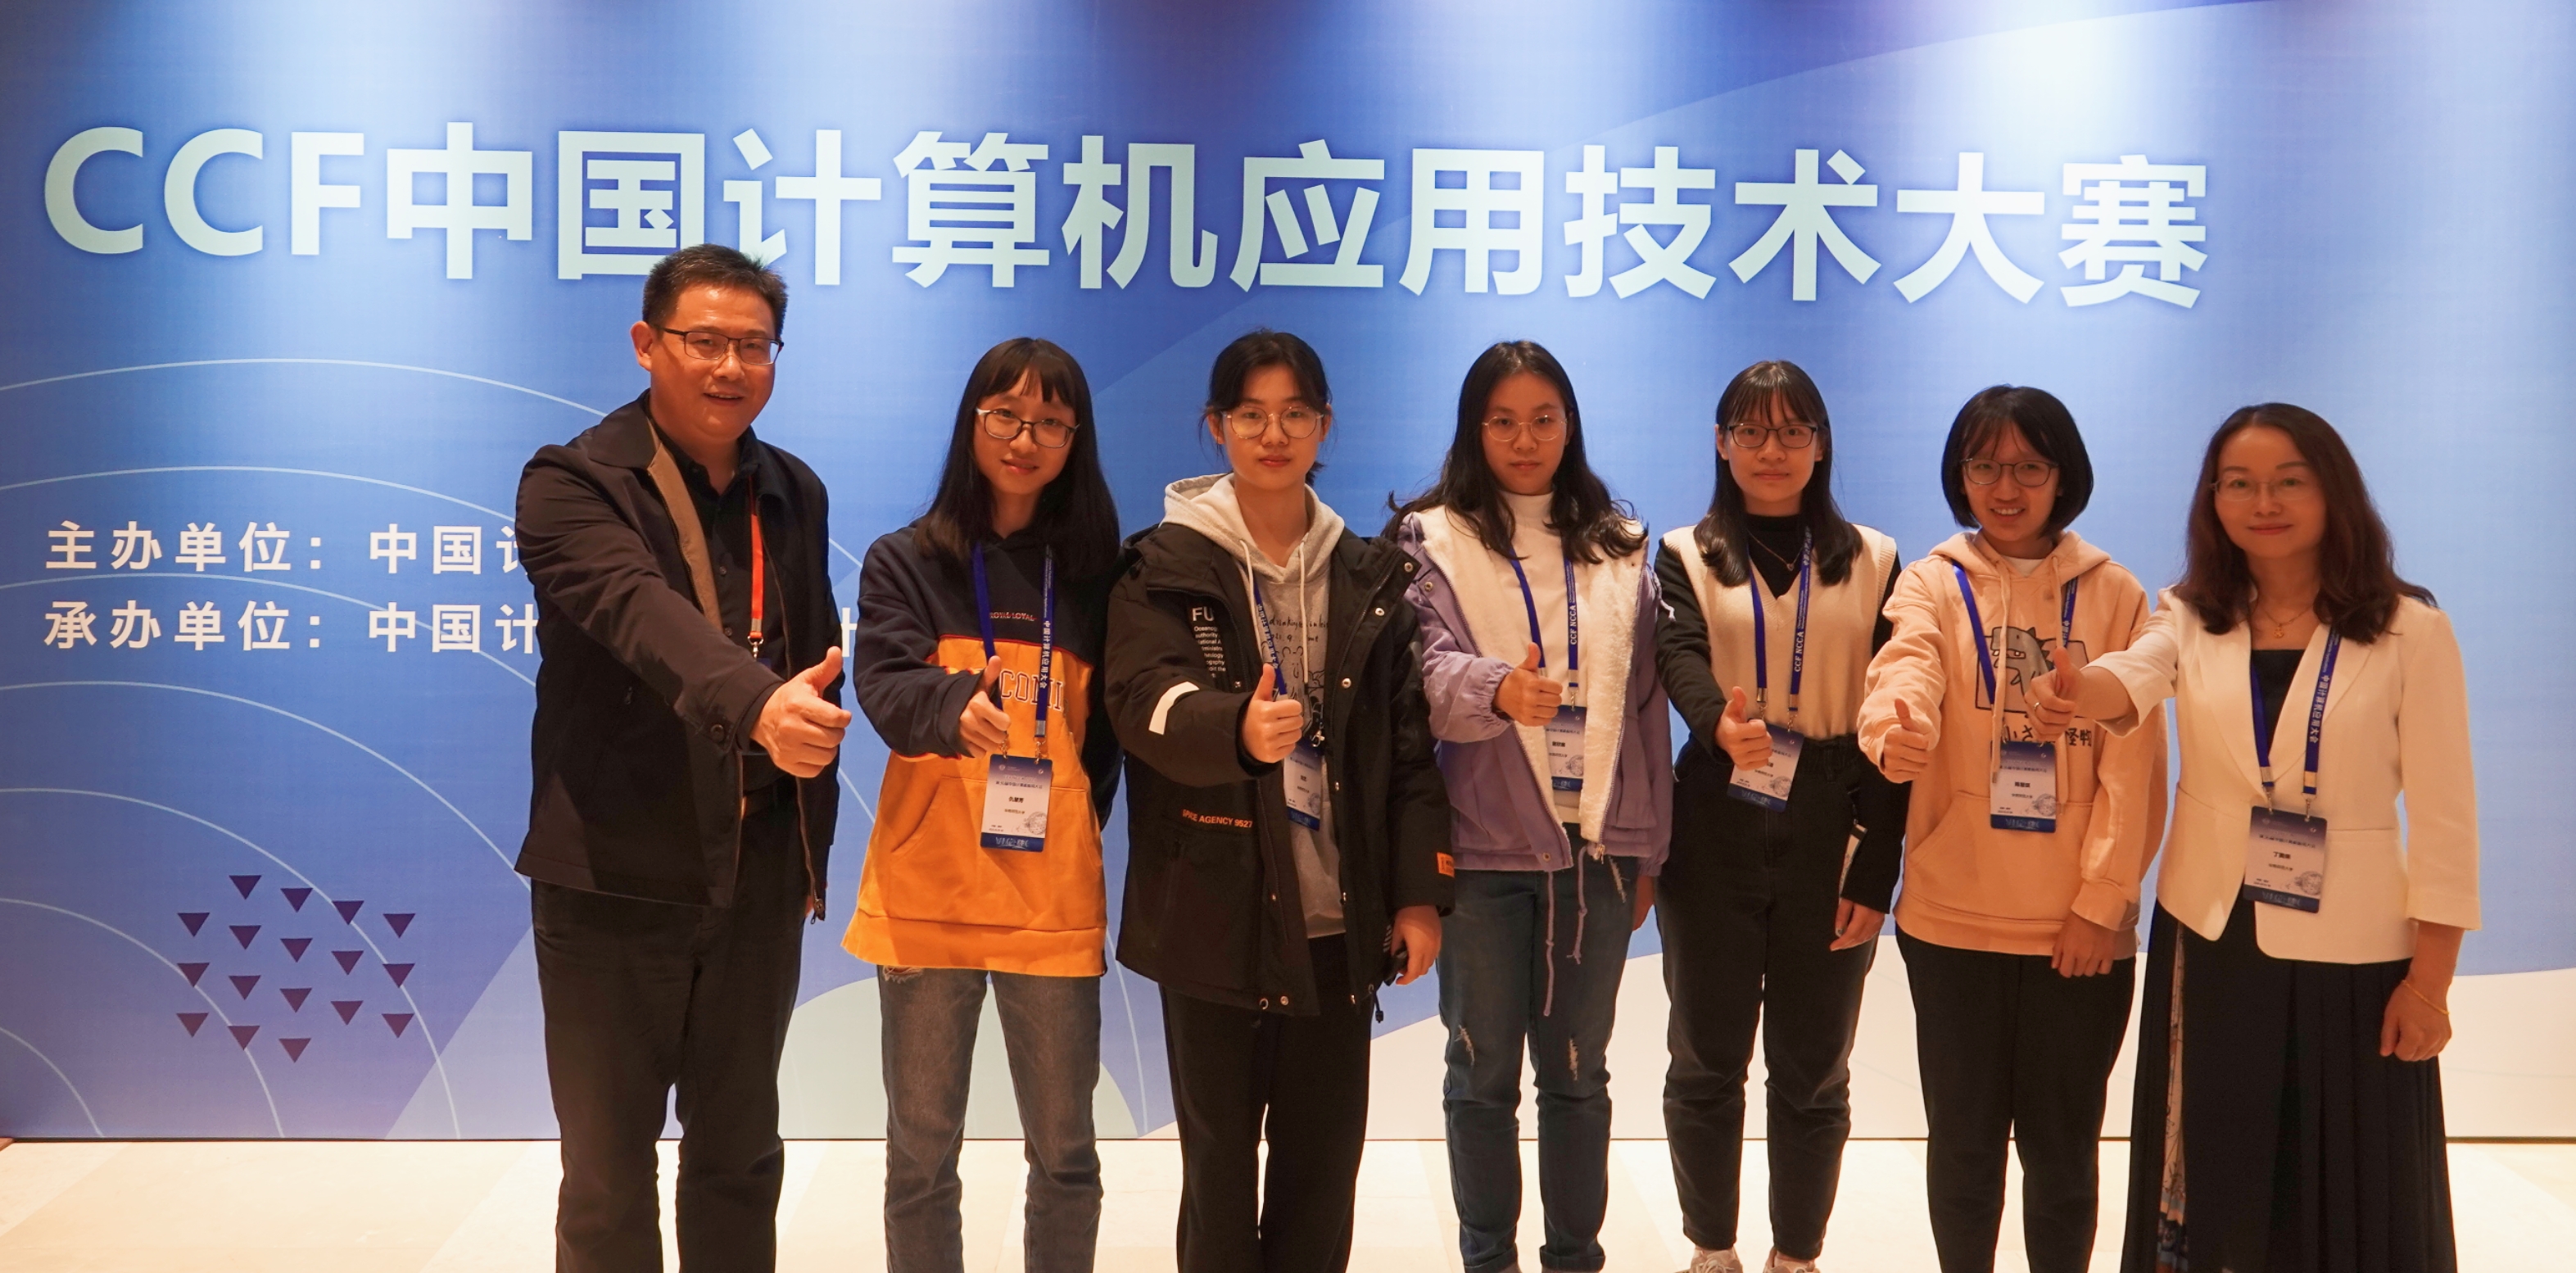 软件学院学生参加中国计算机应用大赛荣获大奖20211019.jpg